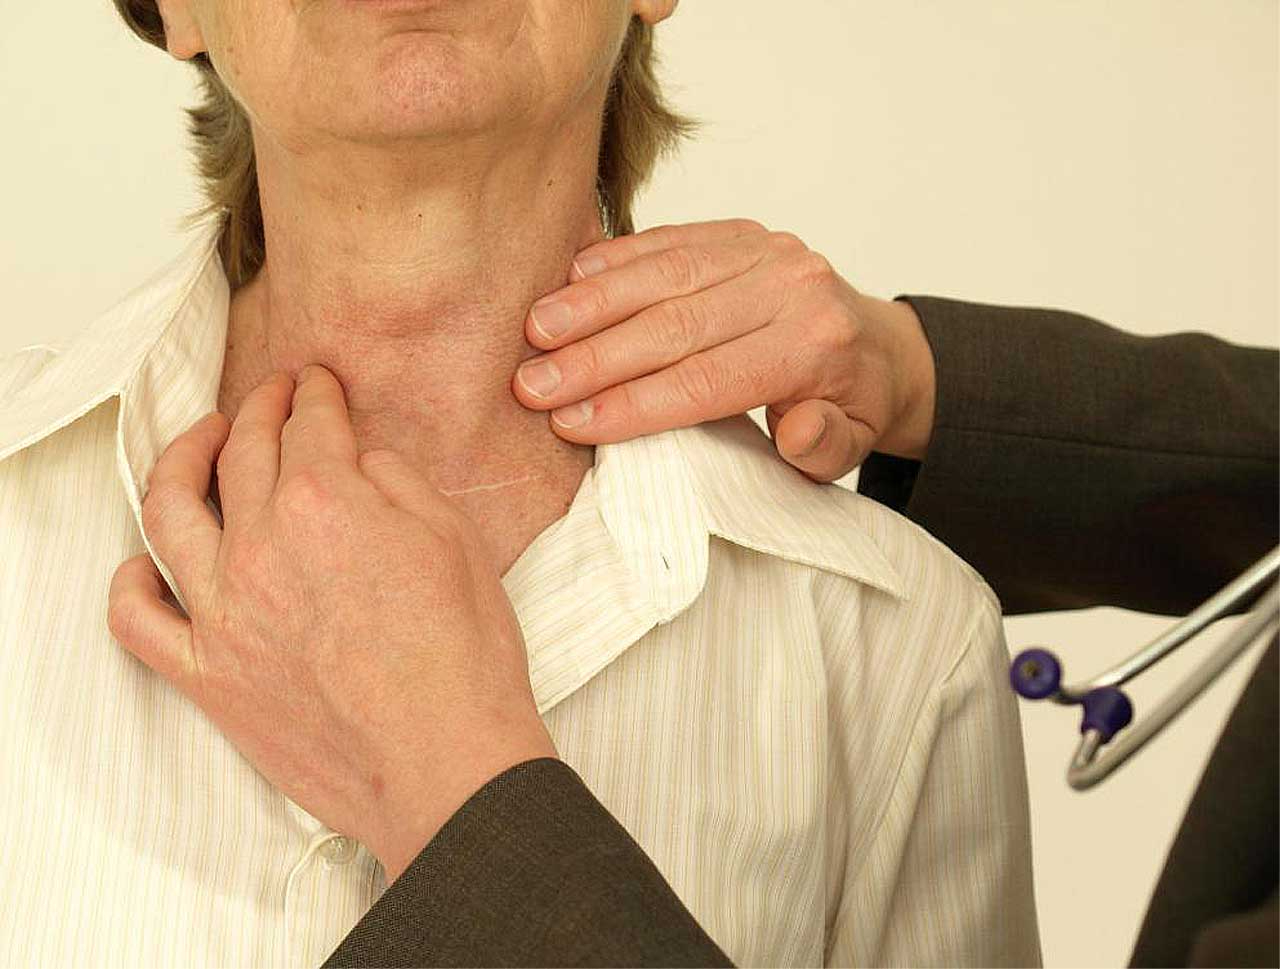 Зоб тест. Заболевания щитовидной железы. РПК зитовидной железы симпомы. Симптомы.рааащитовидной желрзы. Опухоль щитовиднойсжелезы.